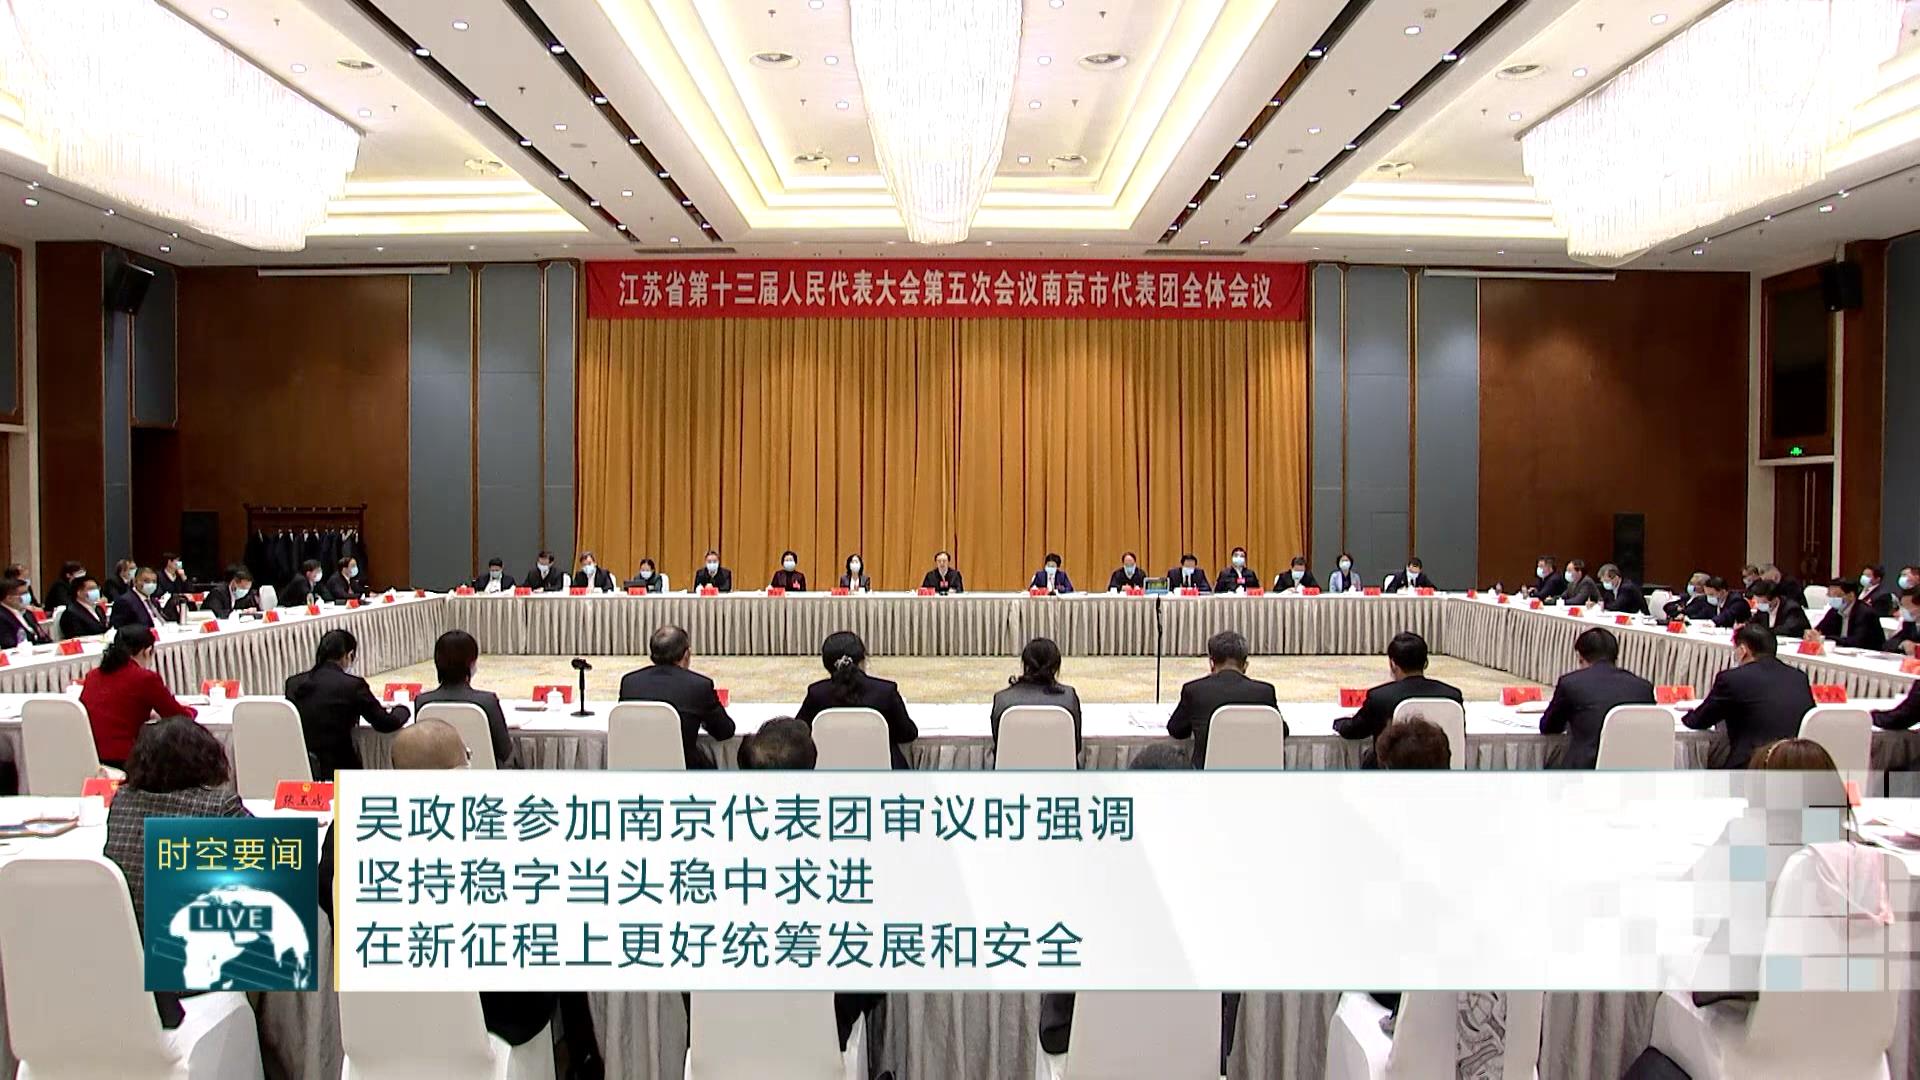 吴政隆参加南京代表团审议时强调 坚持稳字当头稳中求进 在新征程上更好统筹发展和安全